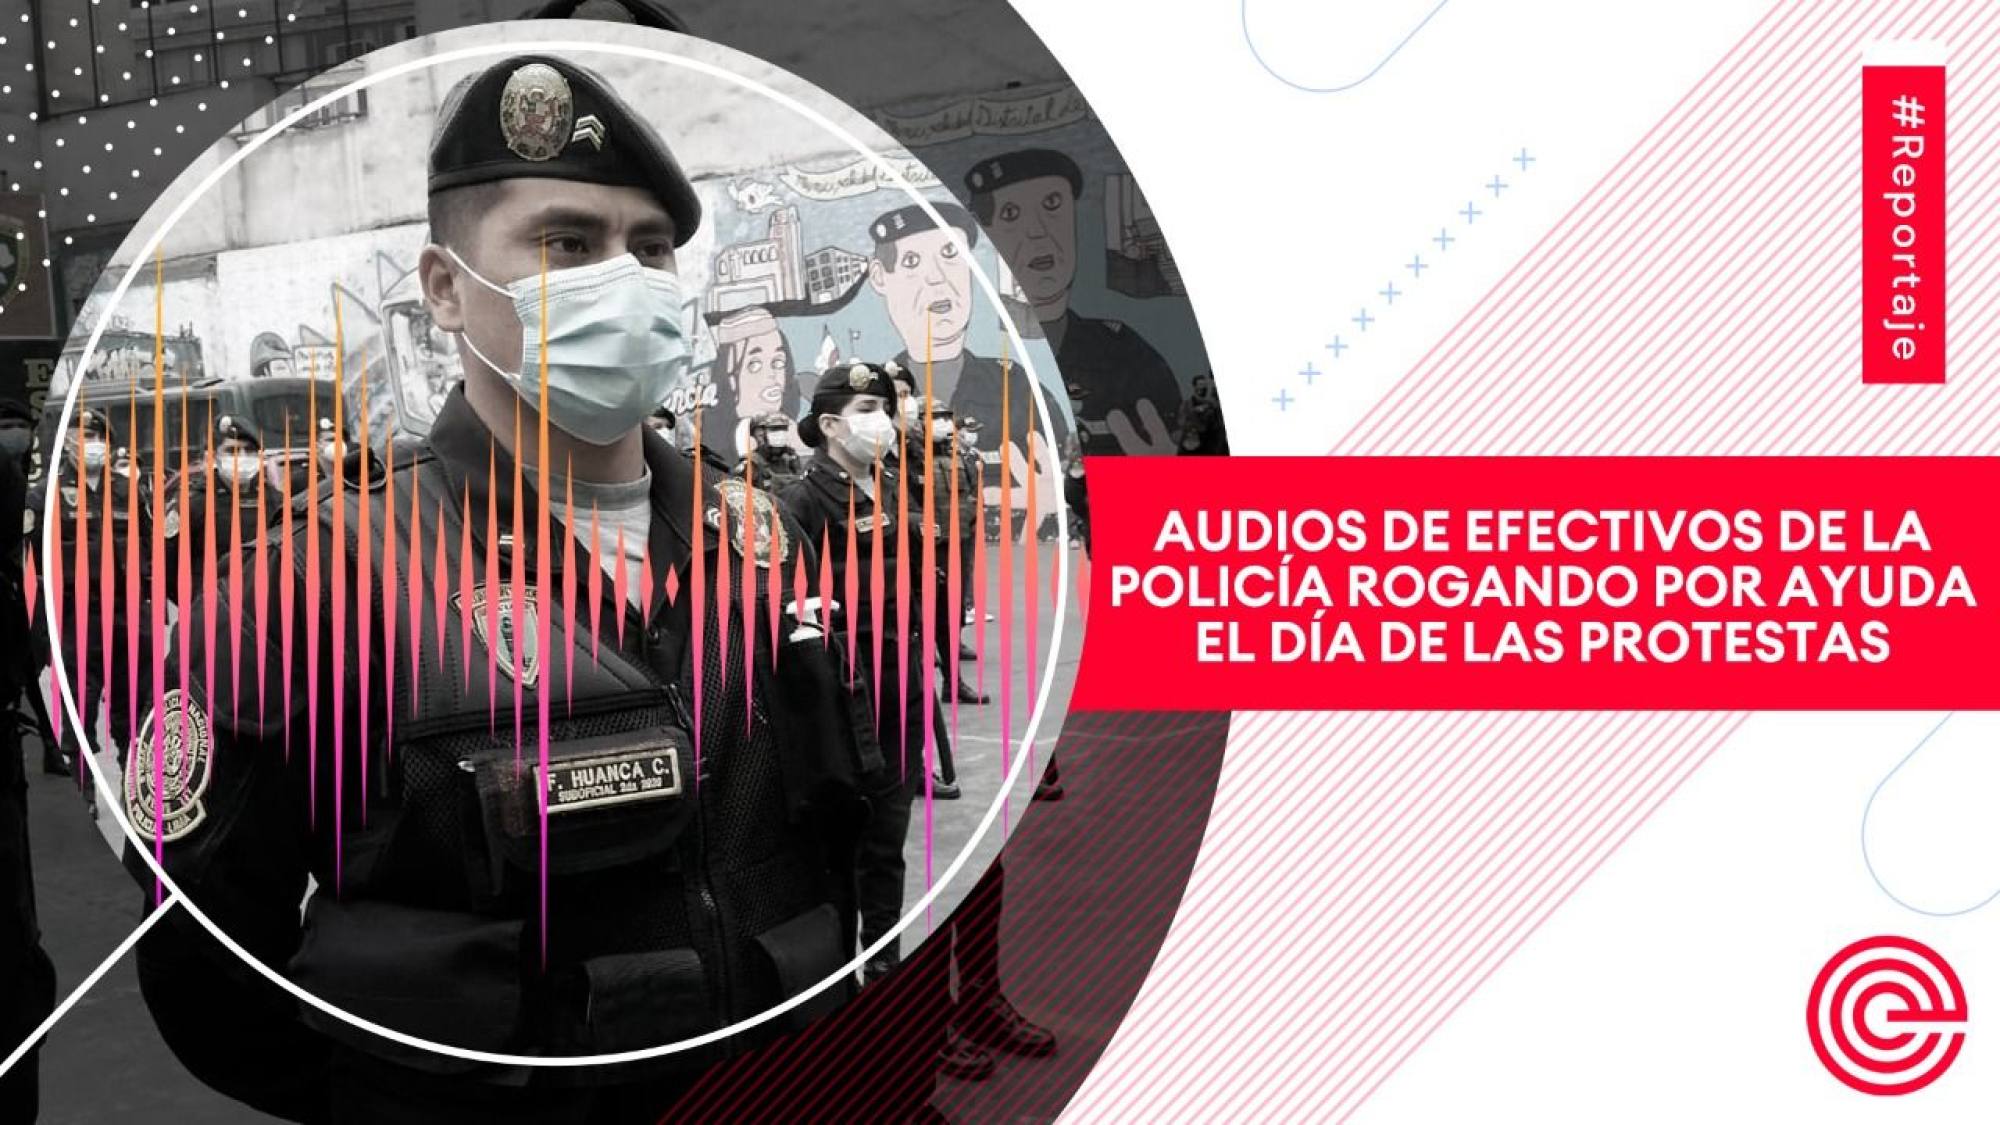 Audios de efectivos de la Policía rogando por ayuda el día de las protestas, Epicentro TV